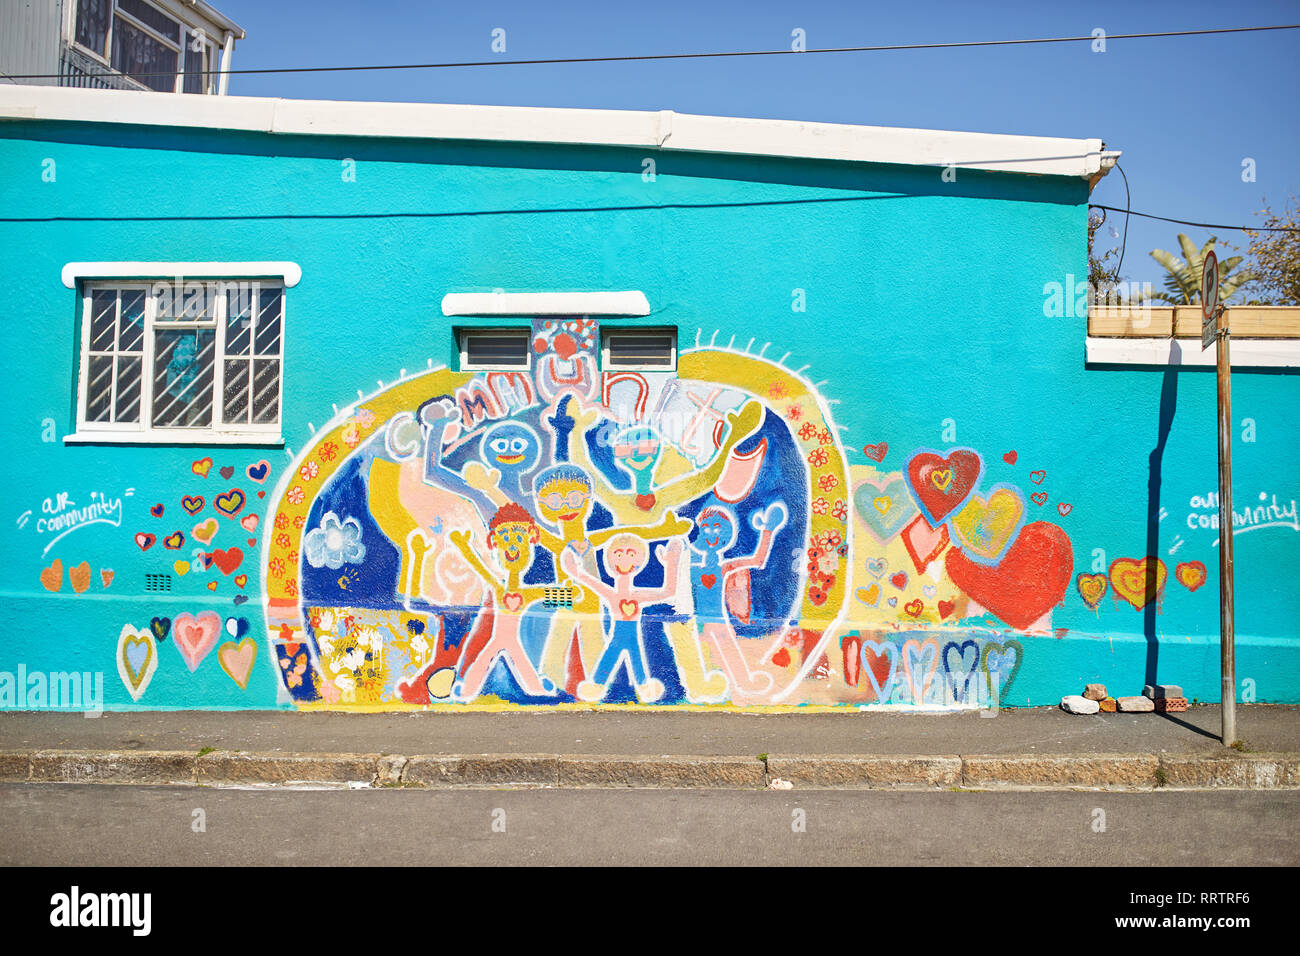 Comunidad vibrante mural sobre pared urbana soleado Foto de stock